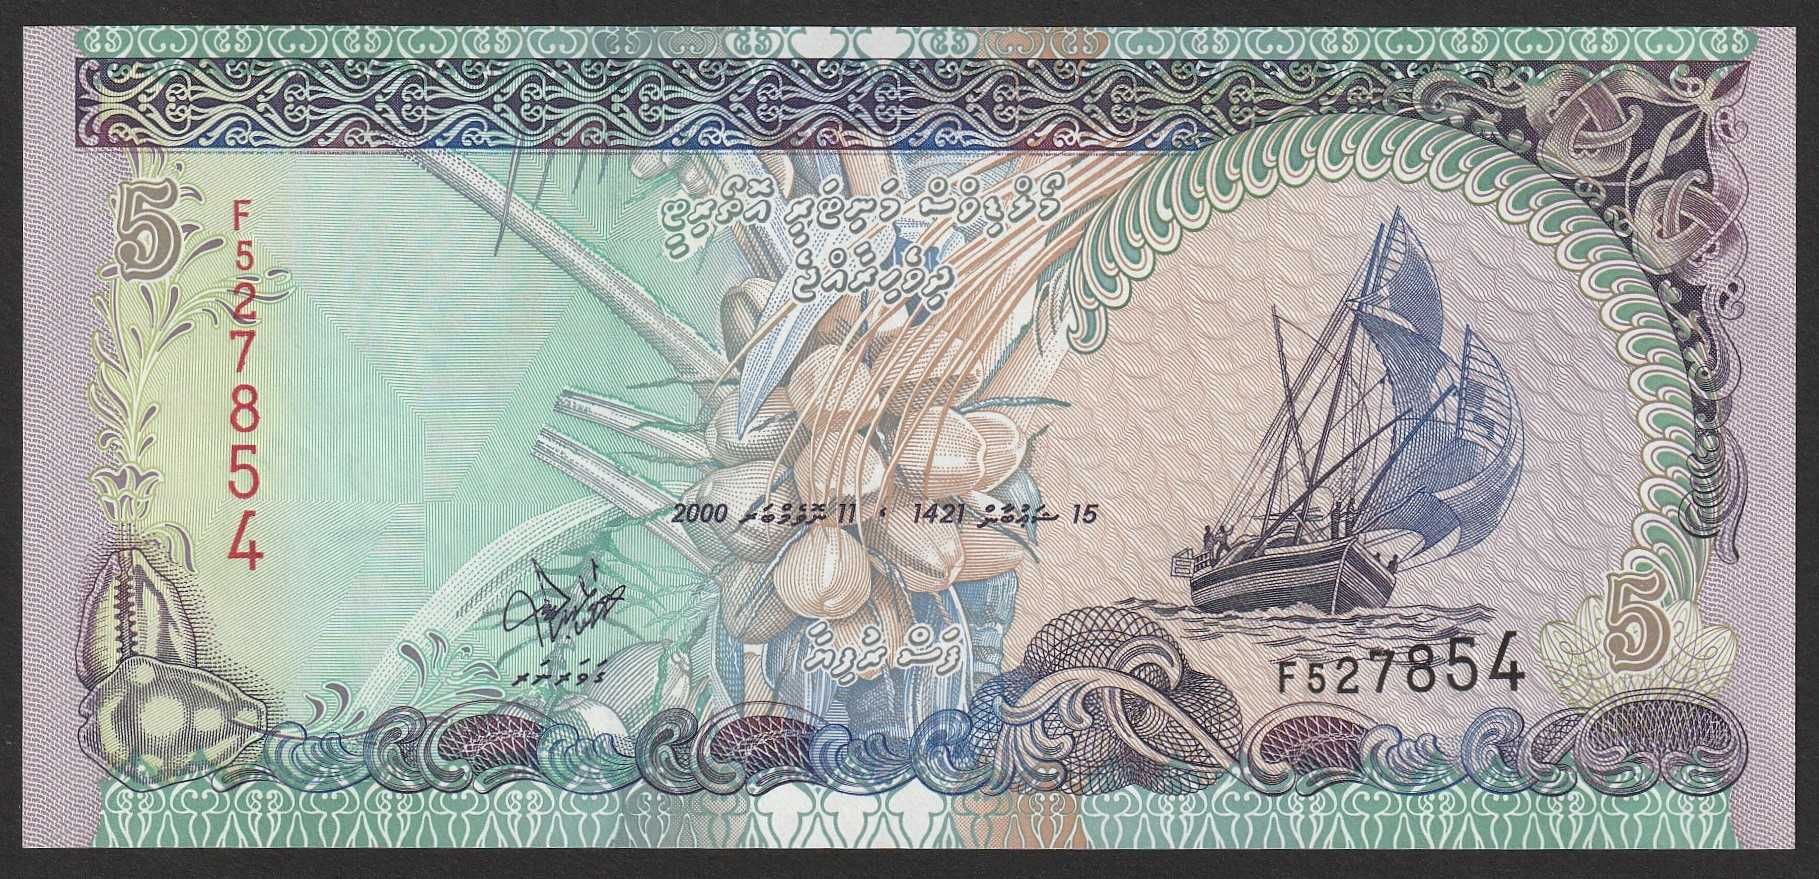 Malediwy 5 rufiyaa 2000 - stan bankowy UNC